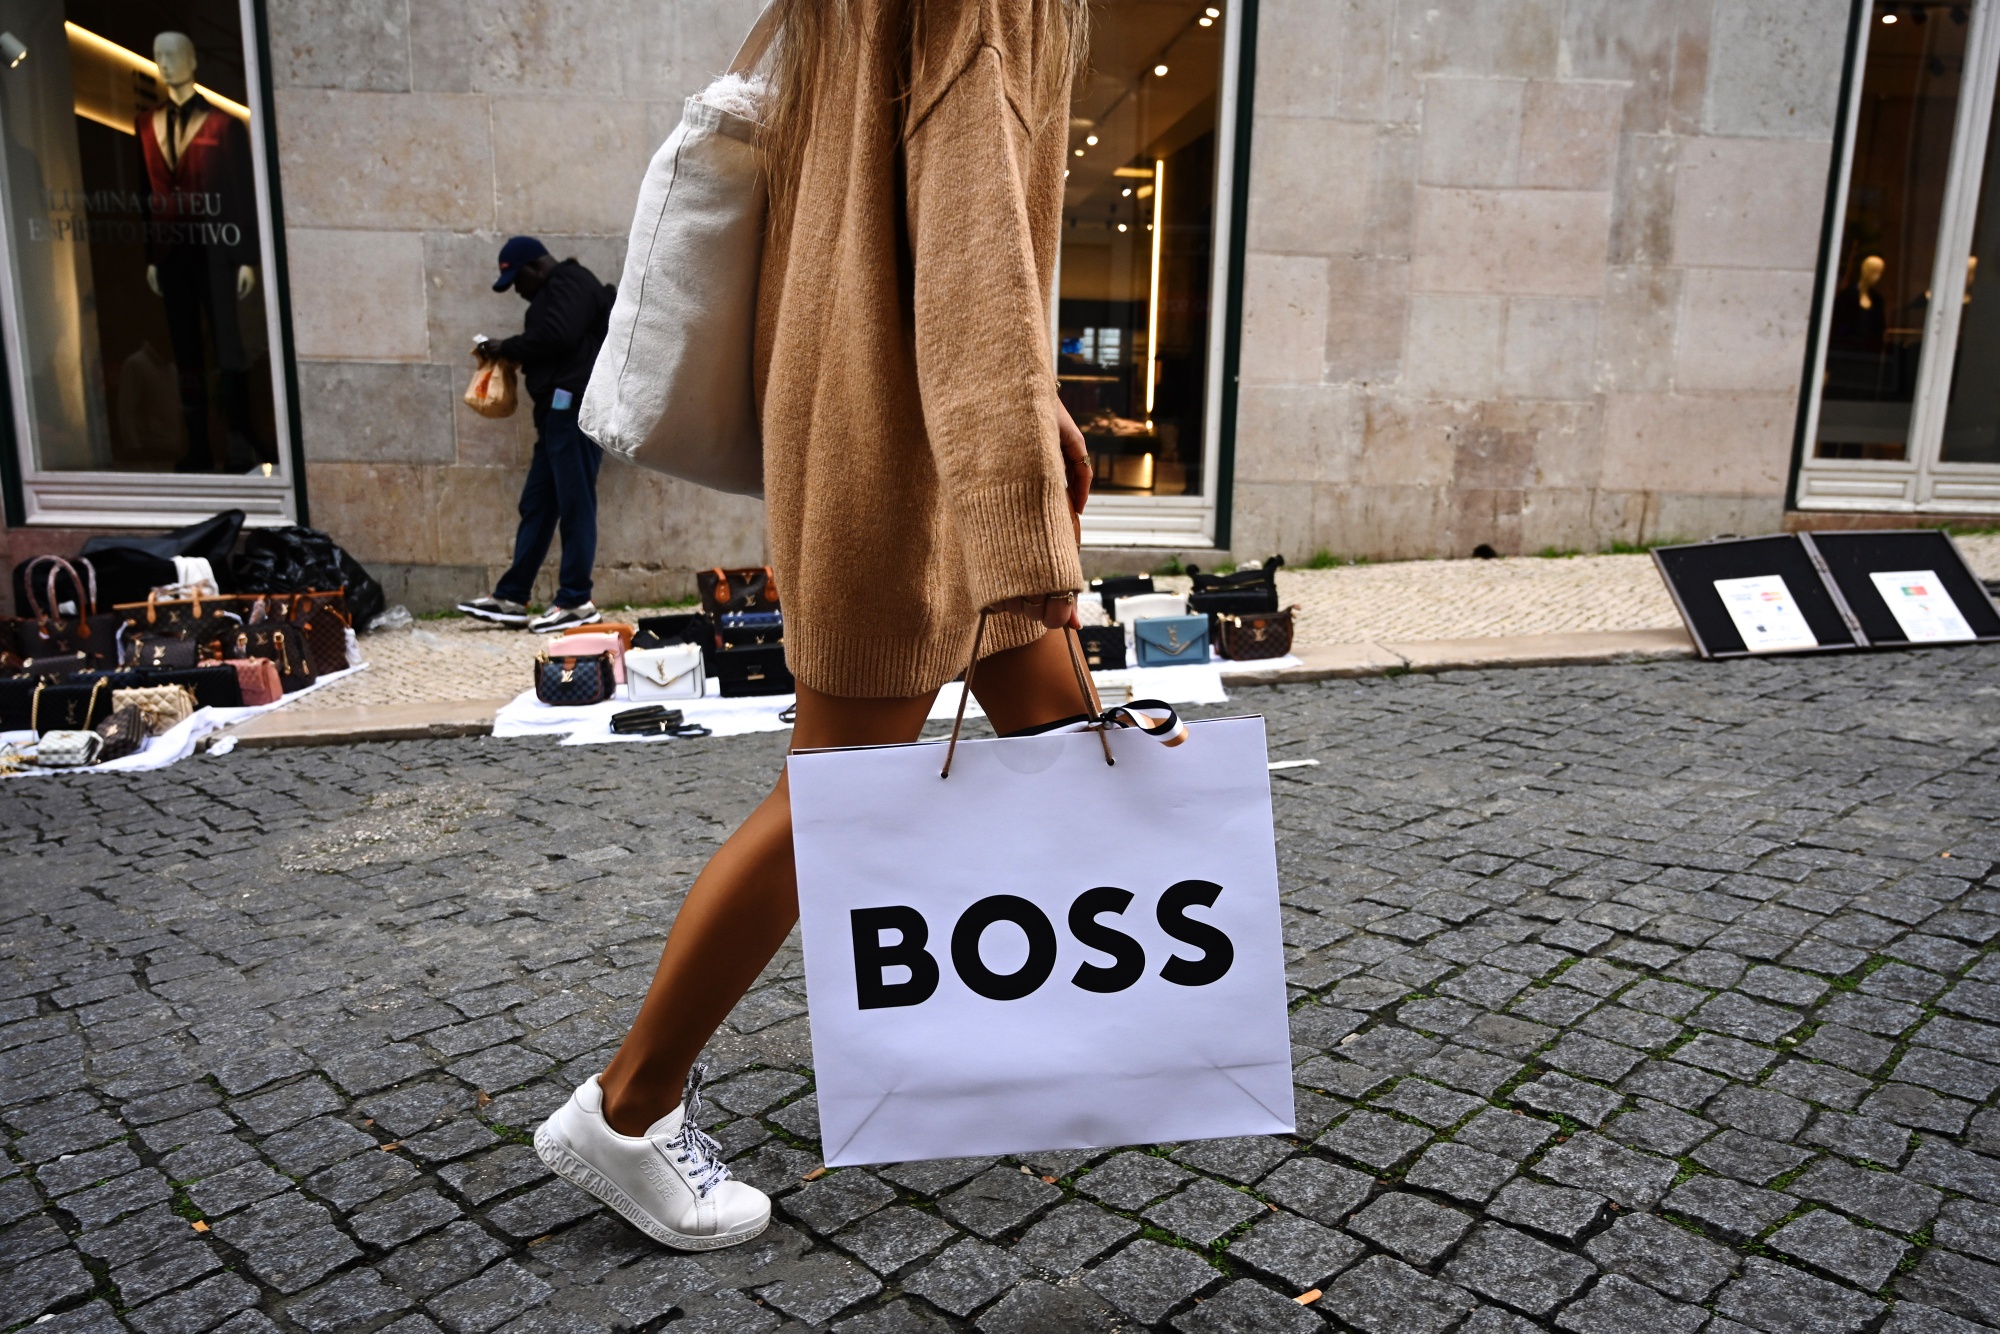 Hugo Boss Raises Guidance on Higher Earnings, Sales - WSJ